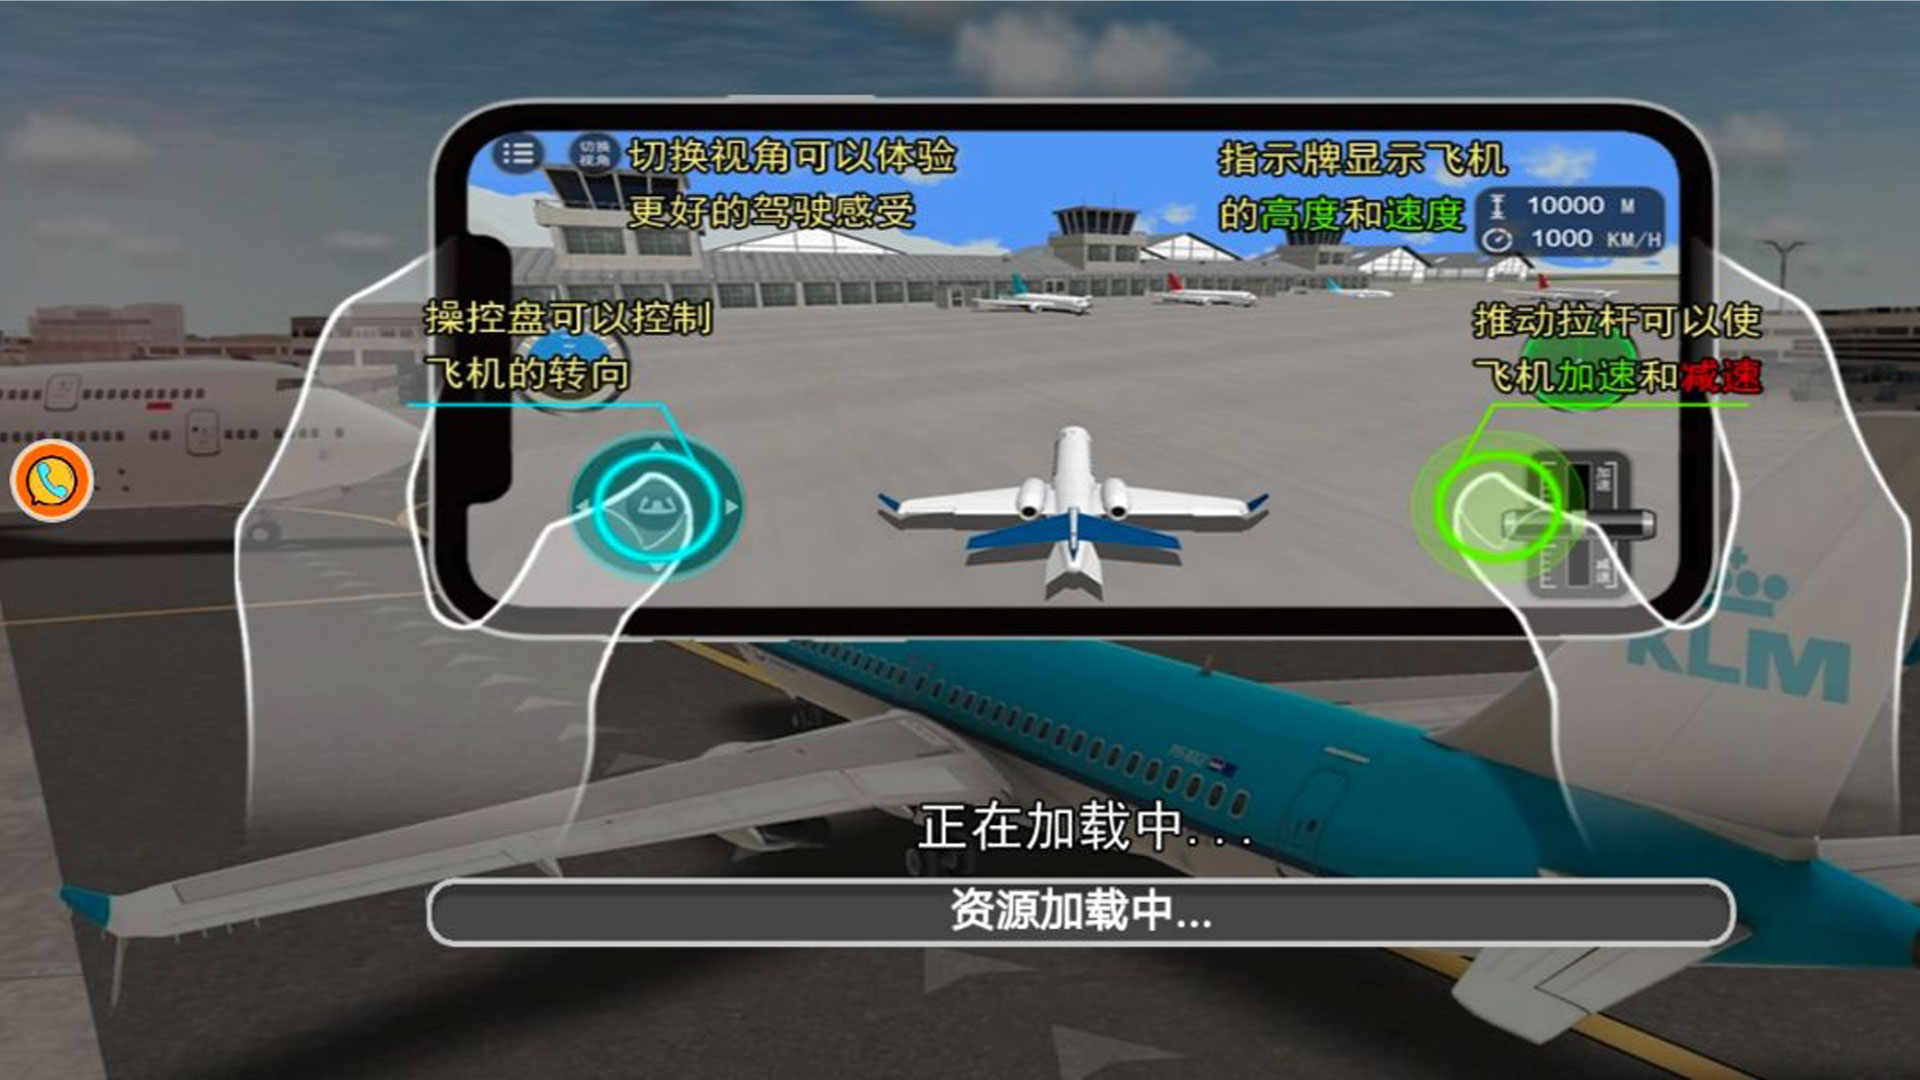 模拟飞行老司机开飞机游戏下载最新版安装-模拟飞行老司机开飞机游戏下载最新版v1.0.1